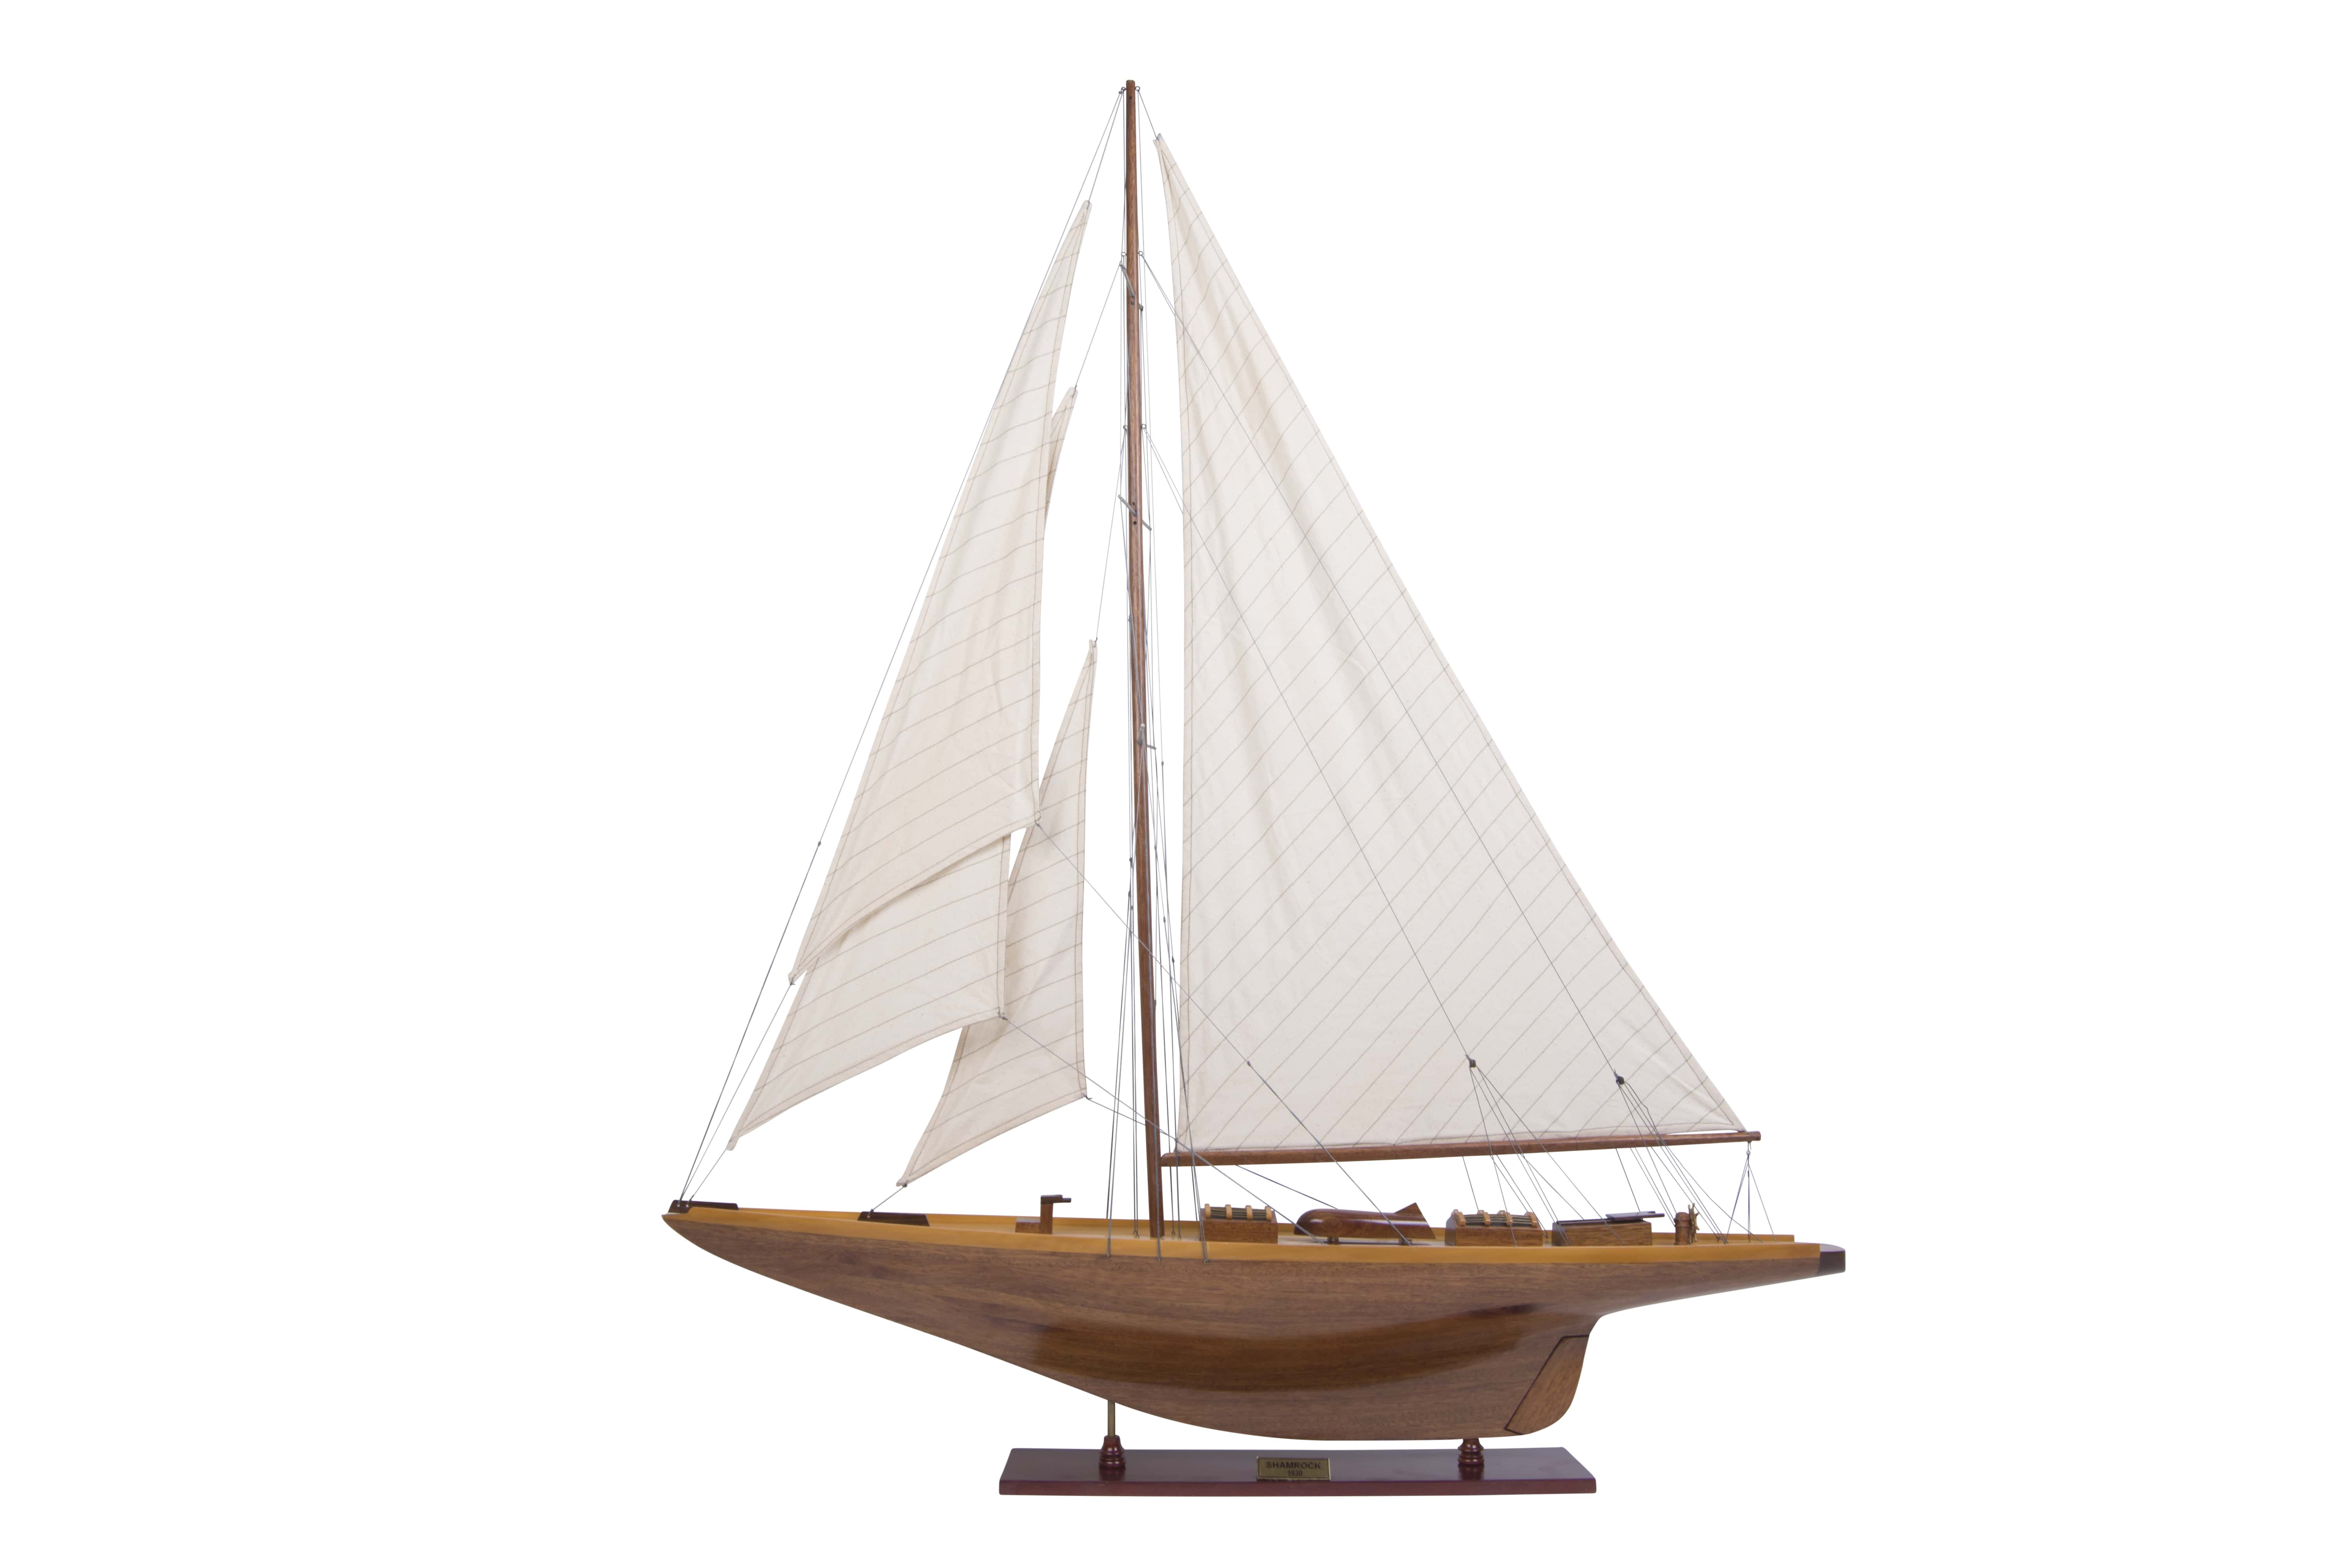 Modèle réduit de yacht en bois Shamrock (Gamme standard) - AM (AS157)